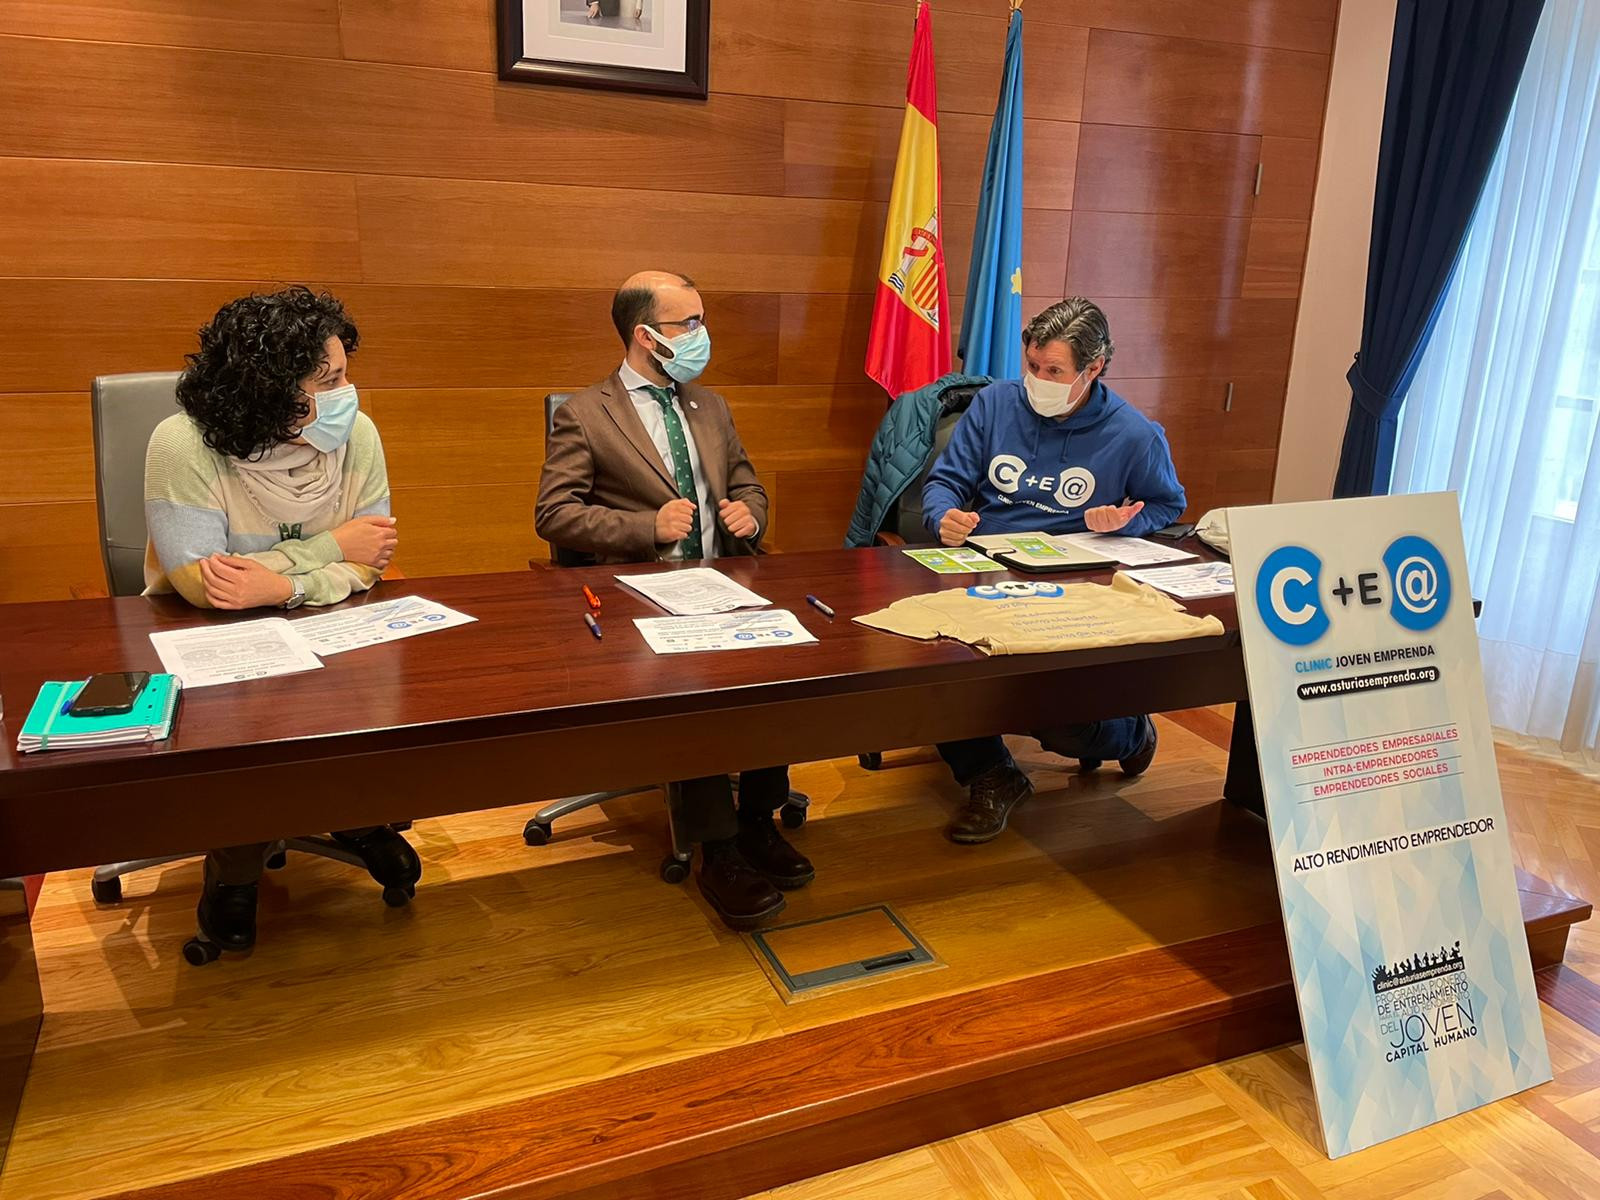 Asturias joven emprenda Presentación Cangas